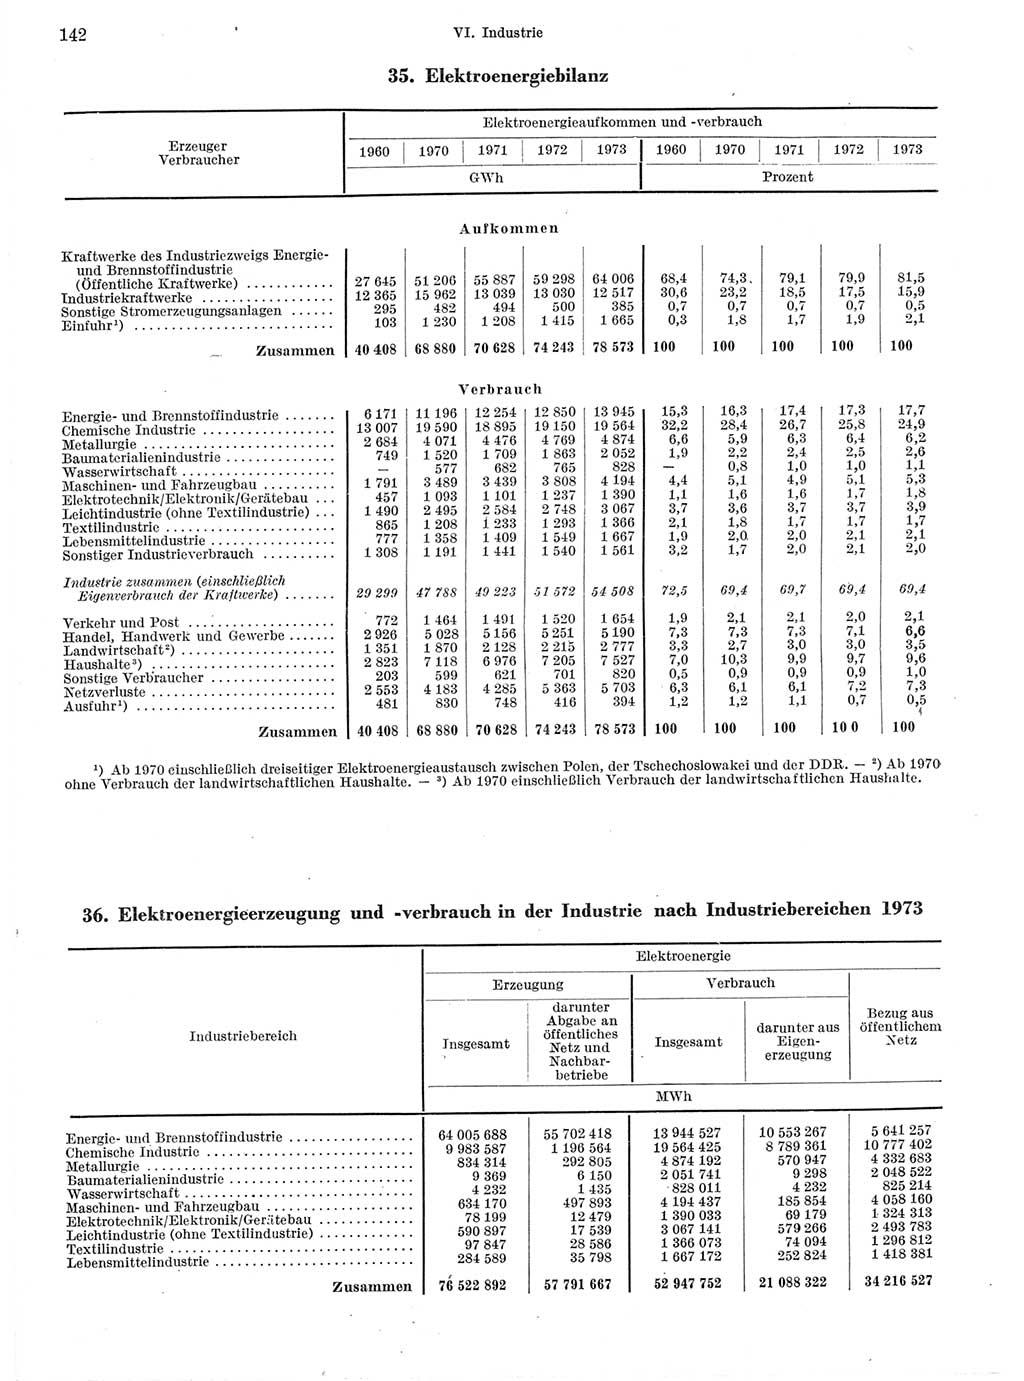 Statistisches Jahrbuch der Deutschen Demokratischen Republik (DDR) 1974, Seite 142 (Stat. Jb. DDR 1974, S. 142)